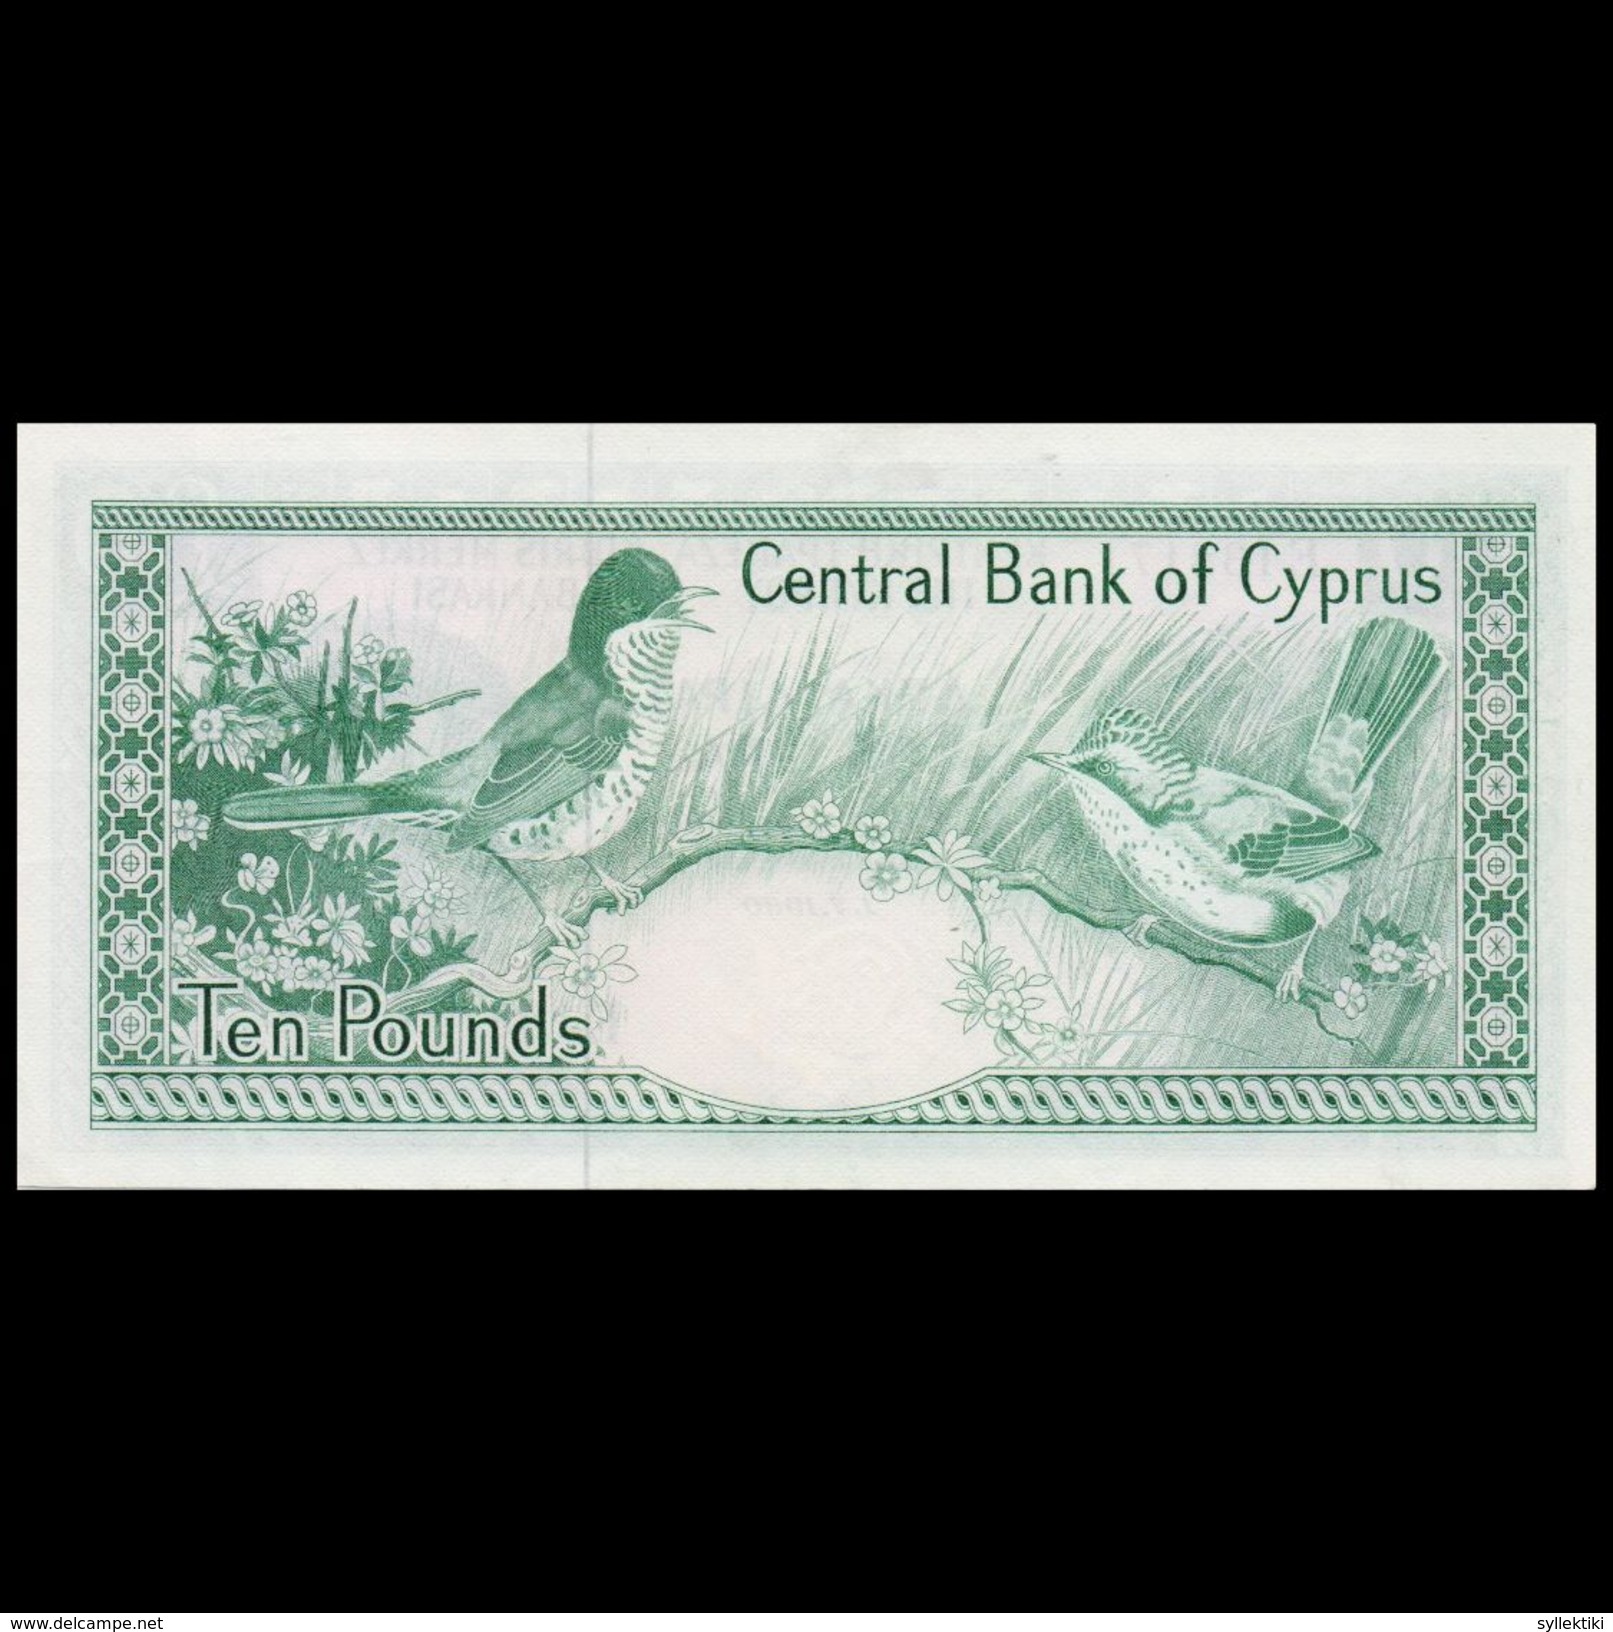 CYPRUS 1980 TEN POUNDS BANKNOTE AUNC - Chypre